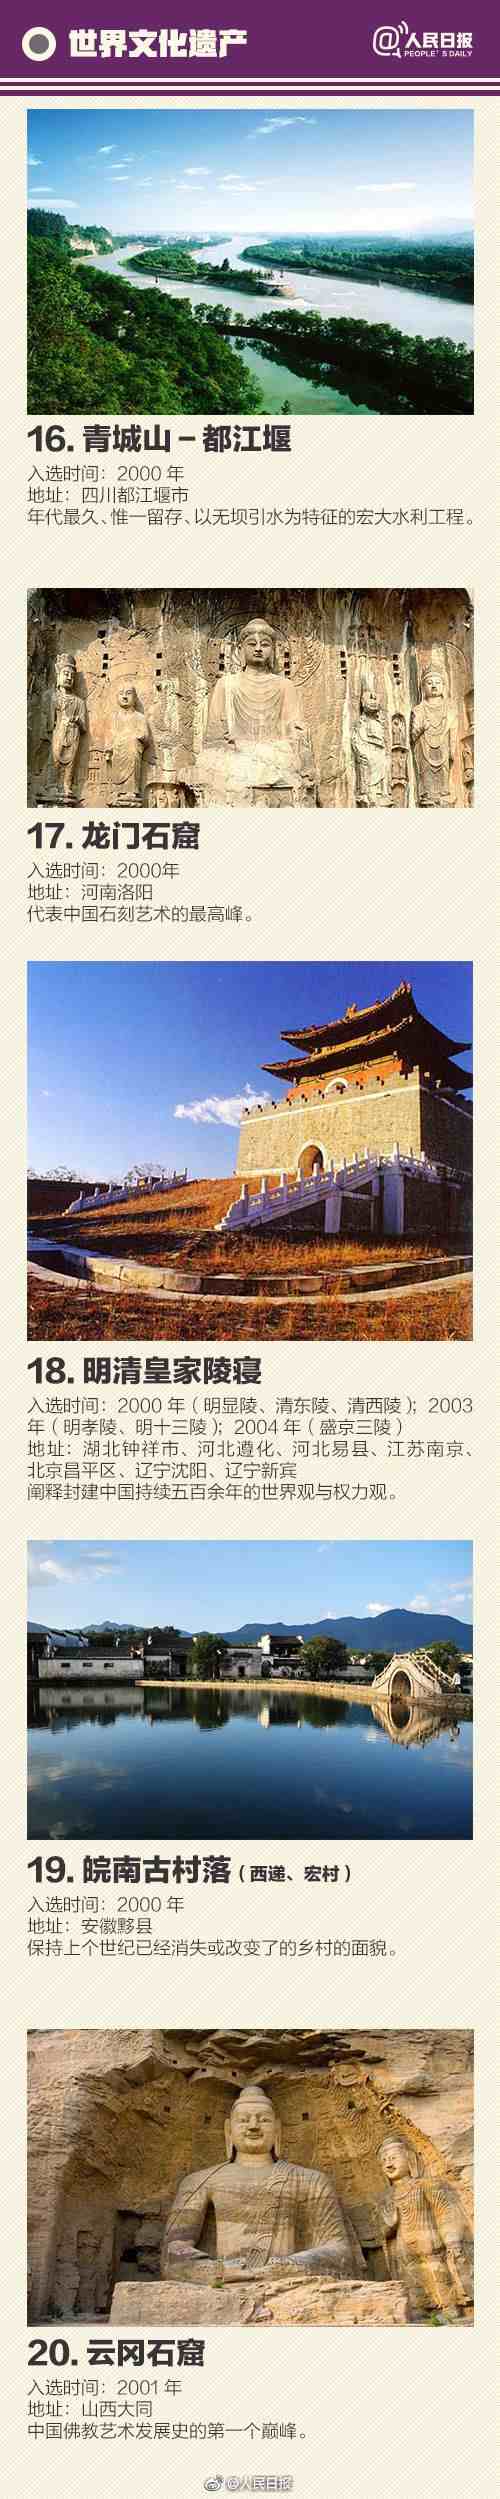 中国世界遗产名录|中国55个世界遗产名单一览大全